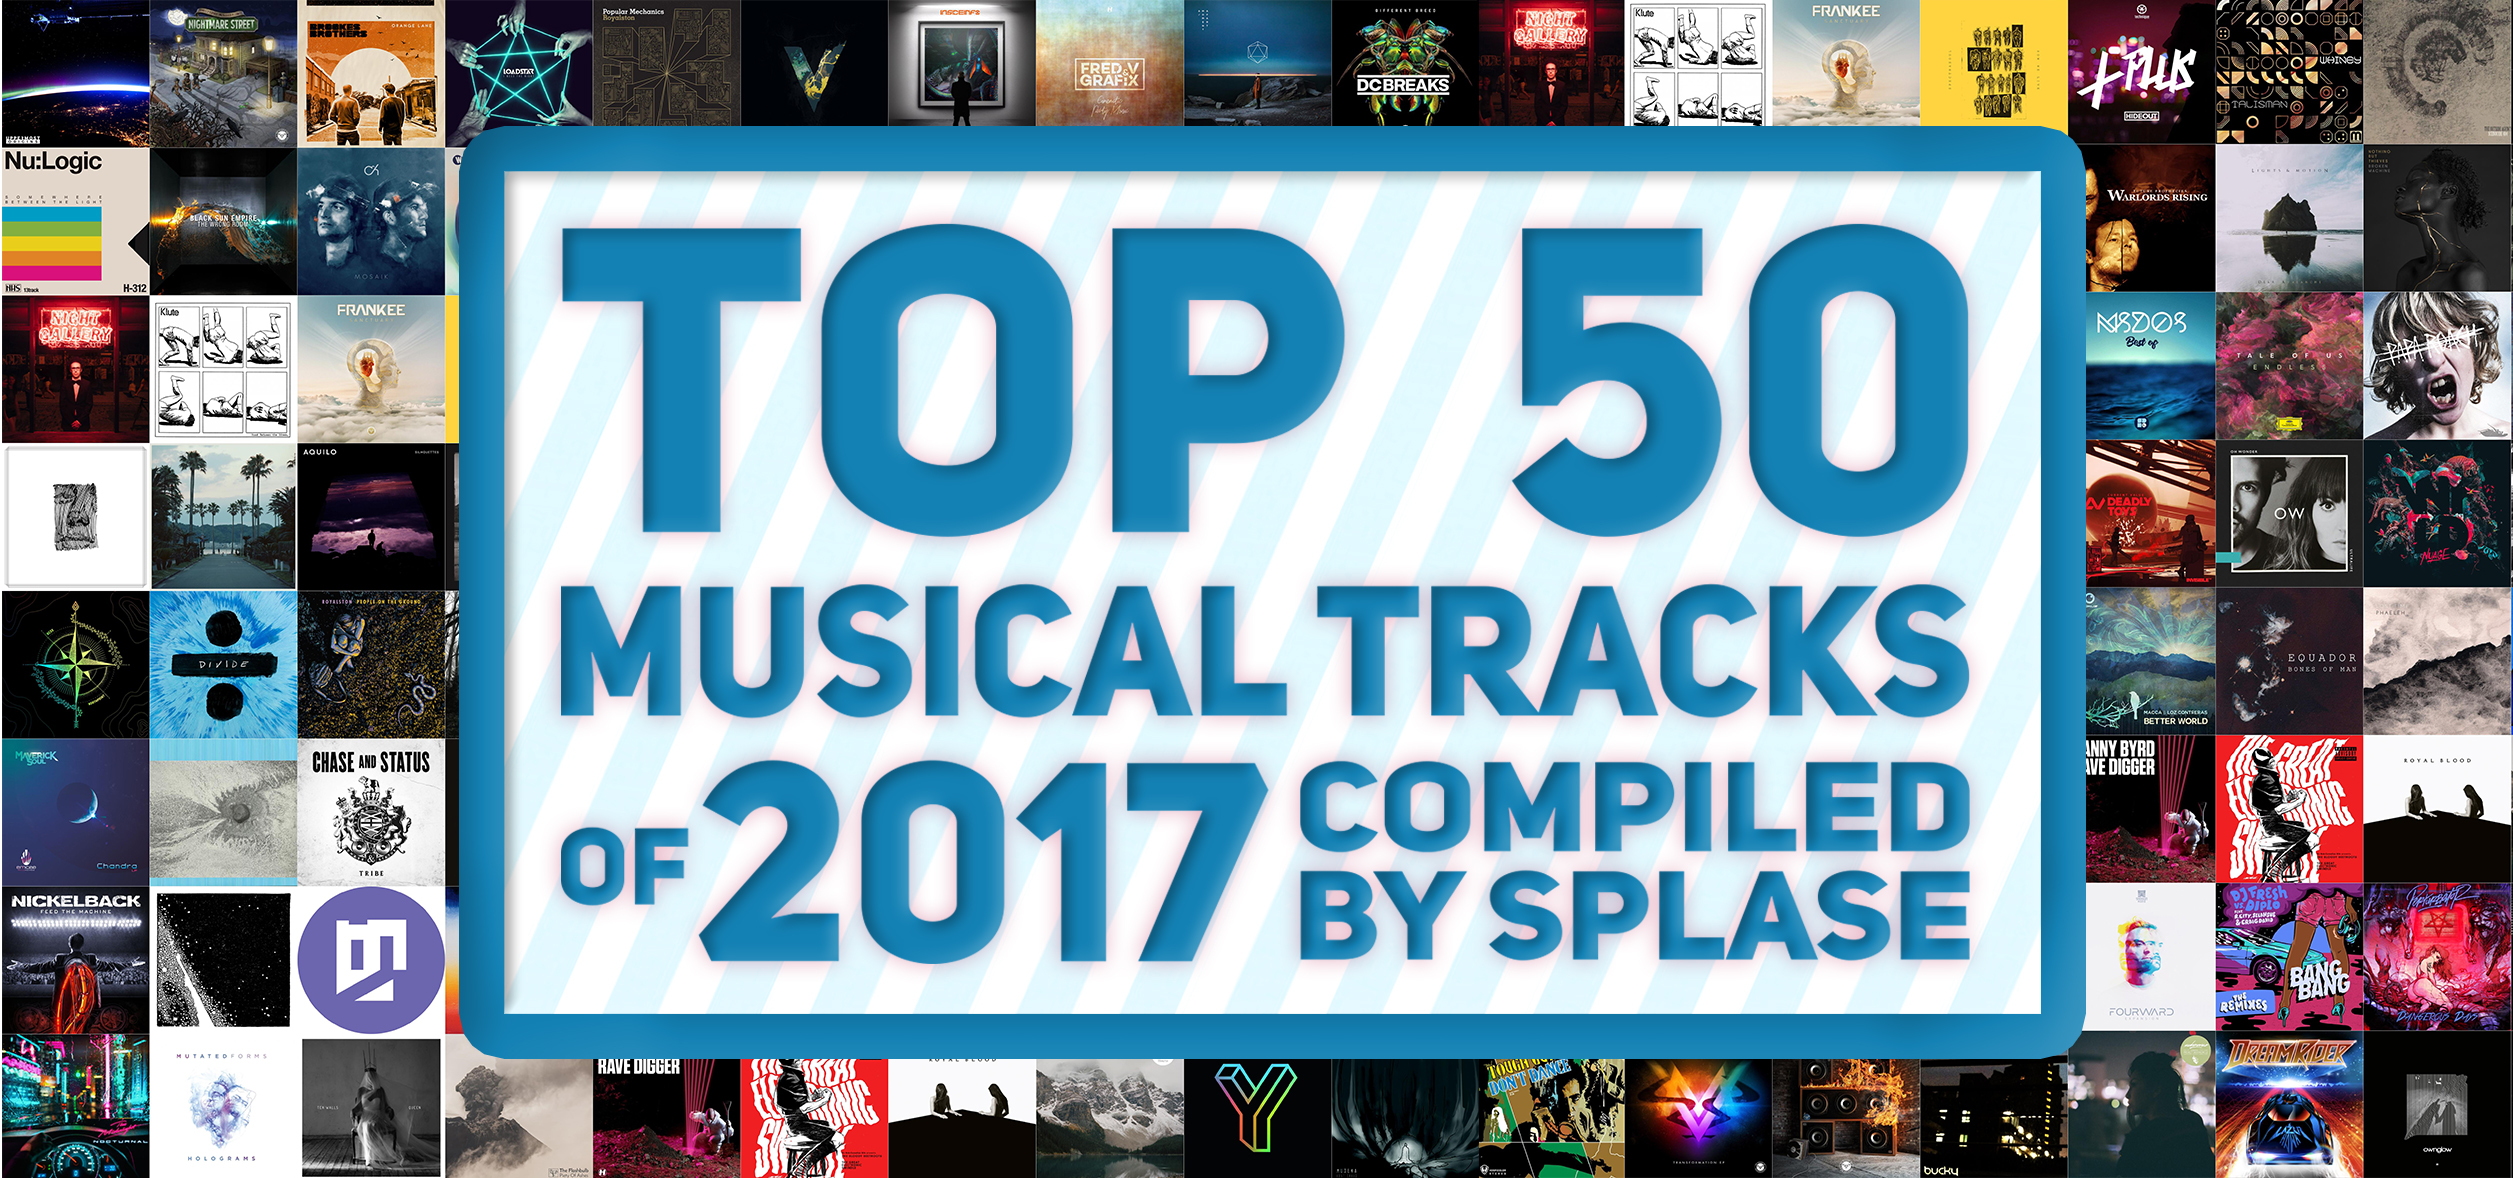 ТОП 30 Музыкальных треков 2016 по версии Splase / TOP 30 Musical Tracks of 2016 version by Splase